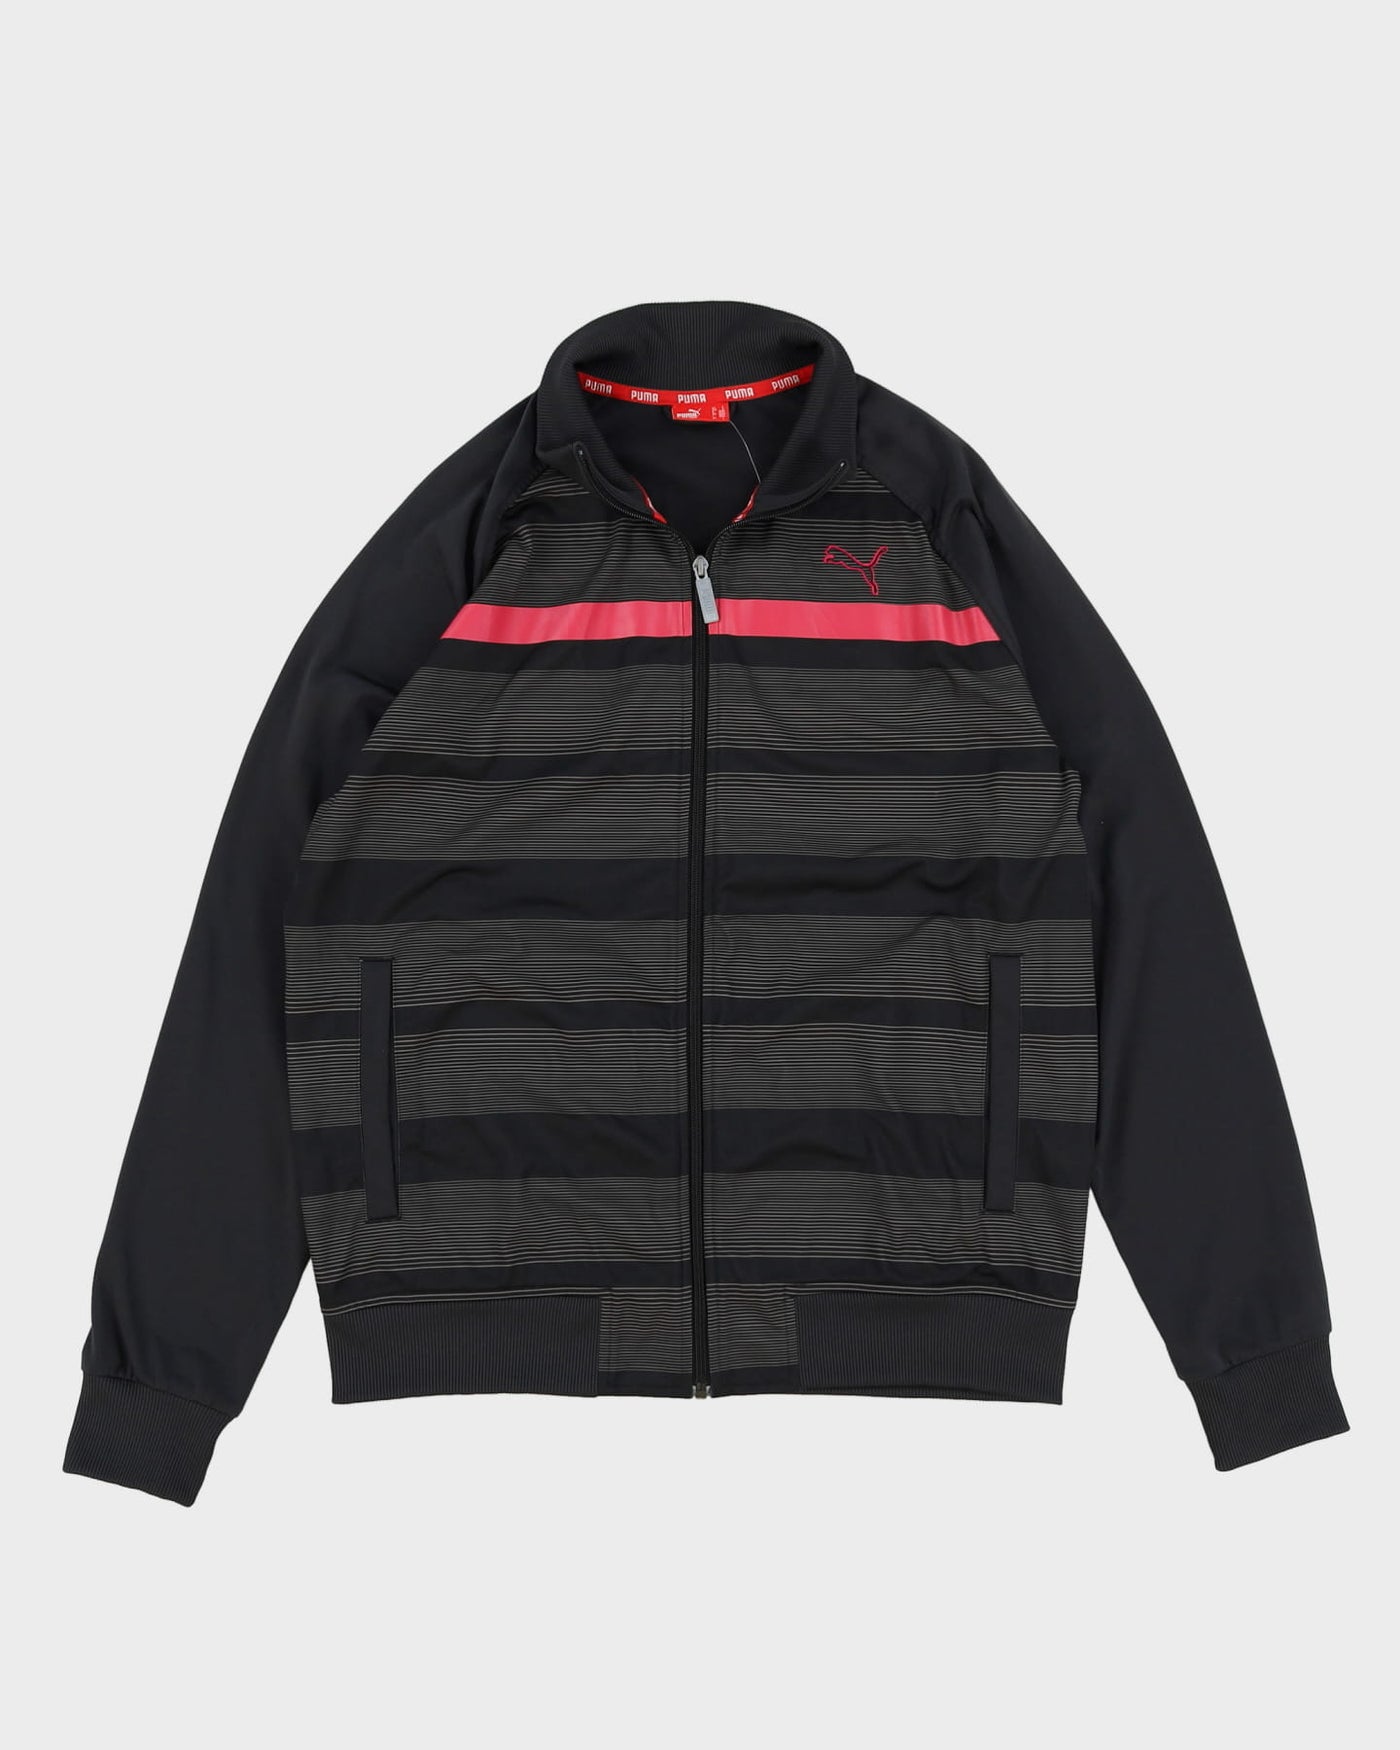 Puma Black / Pink Striped Track Jacket - L